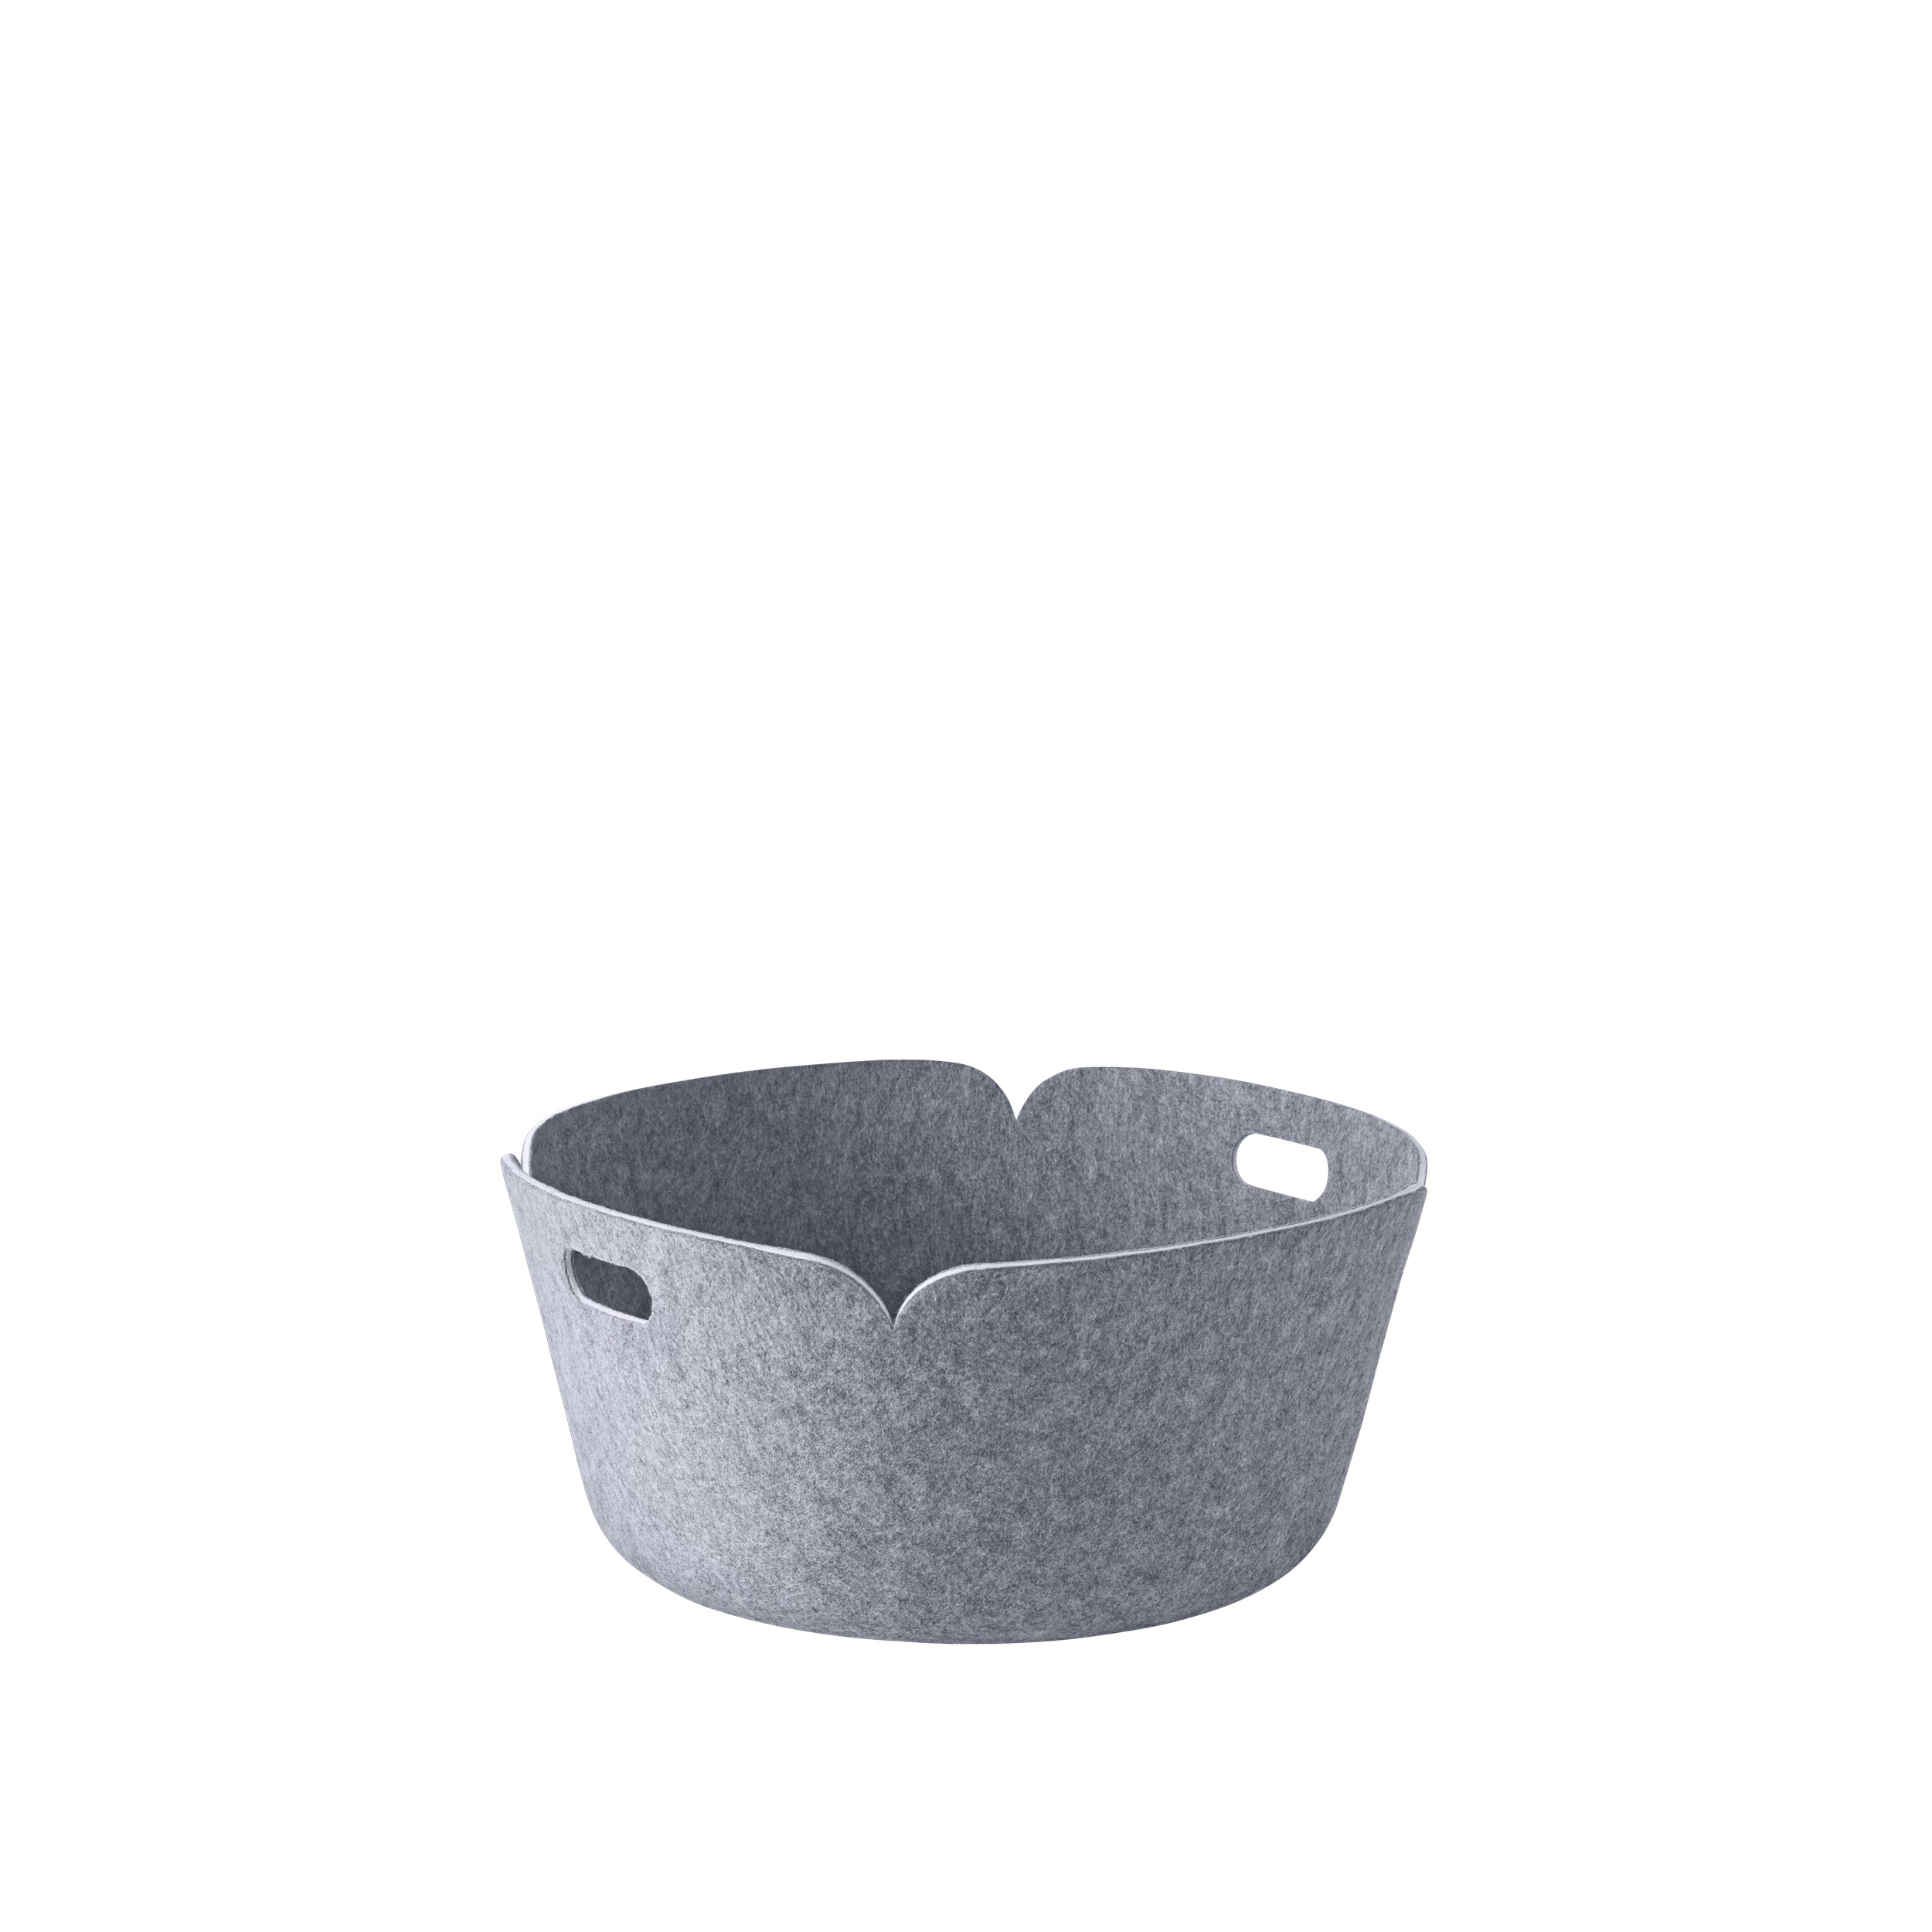 Restore basket round grey melange